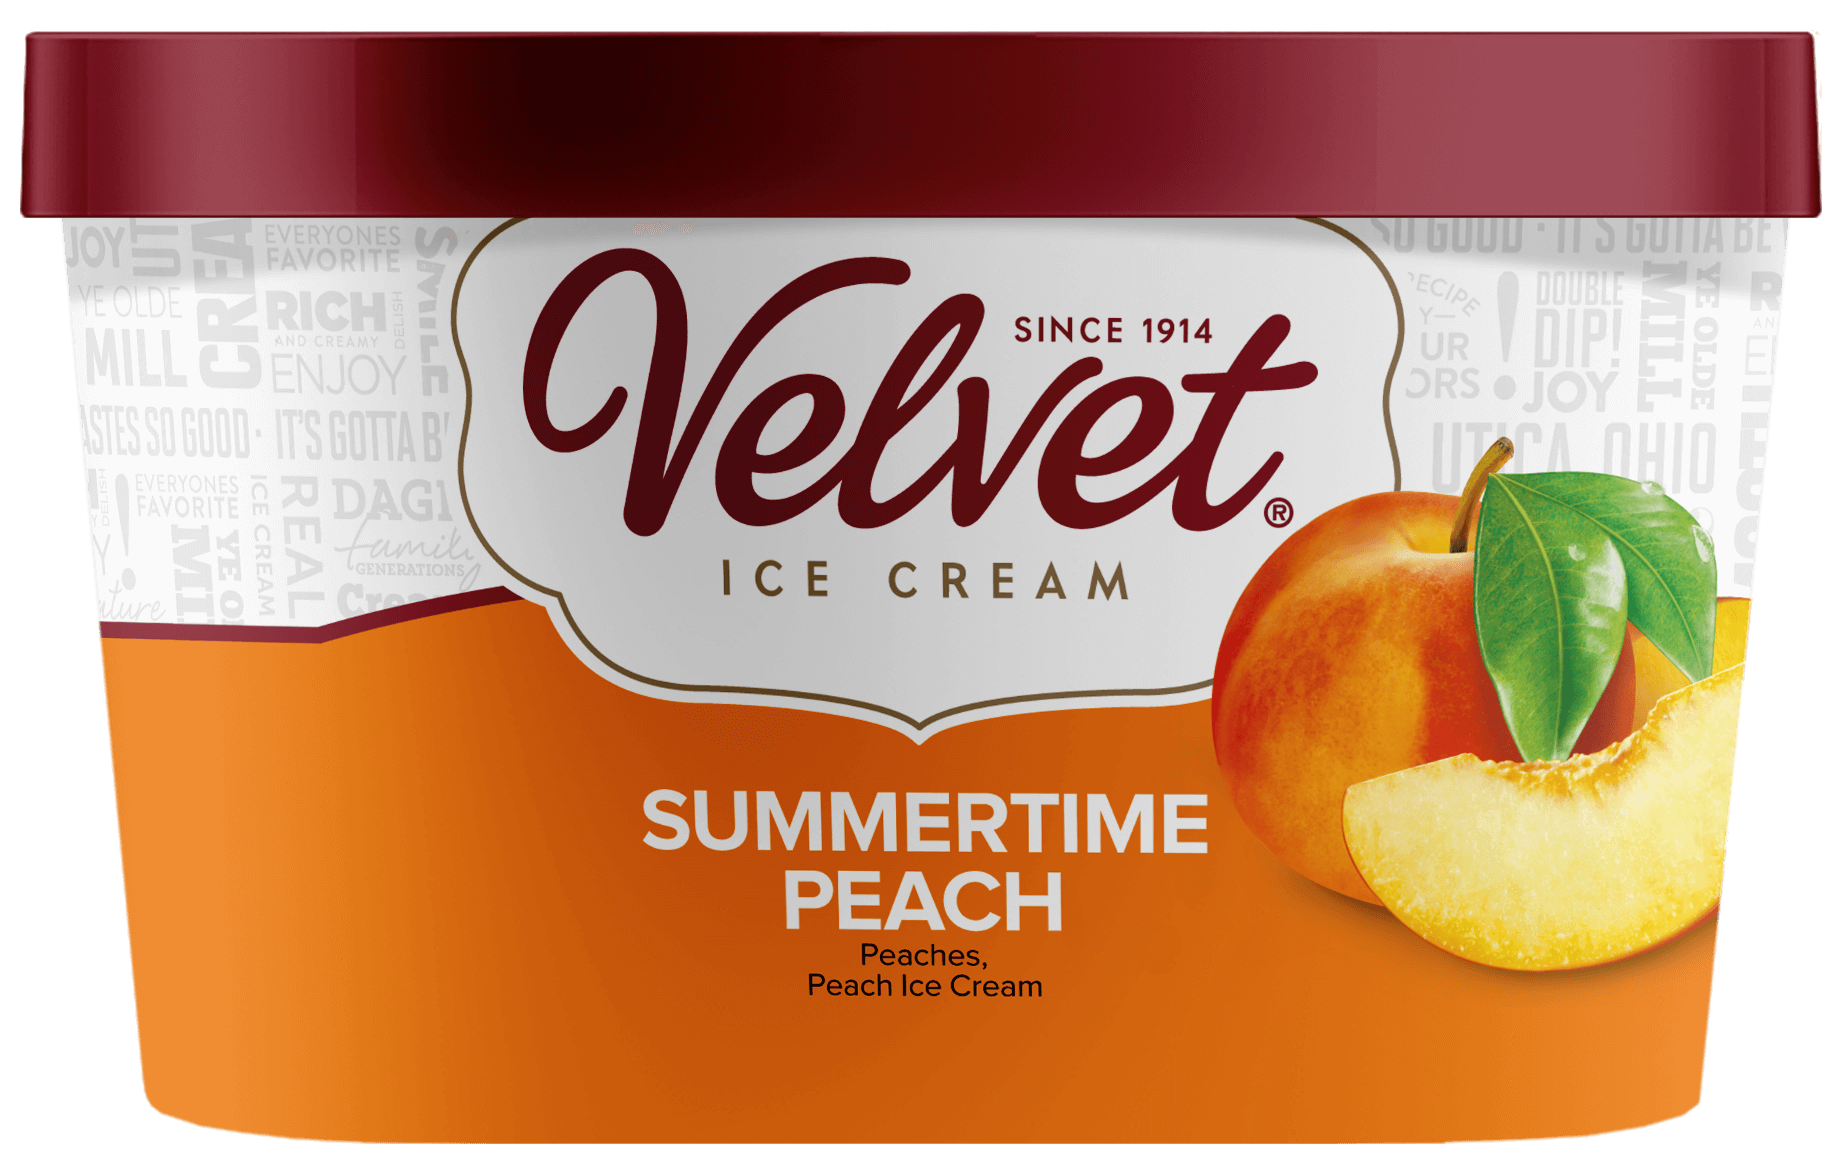 Summertime Peach